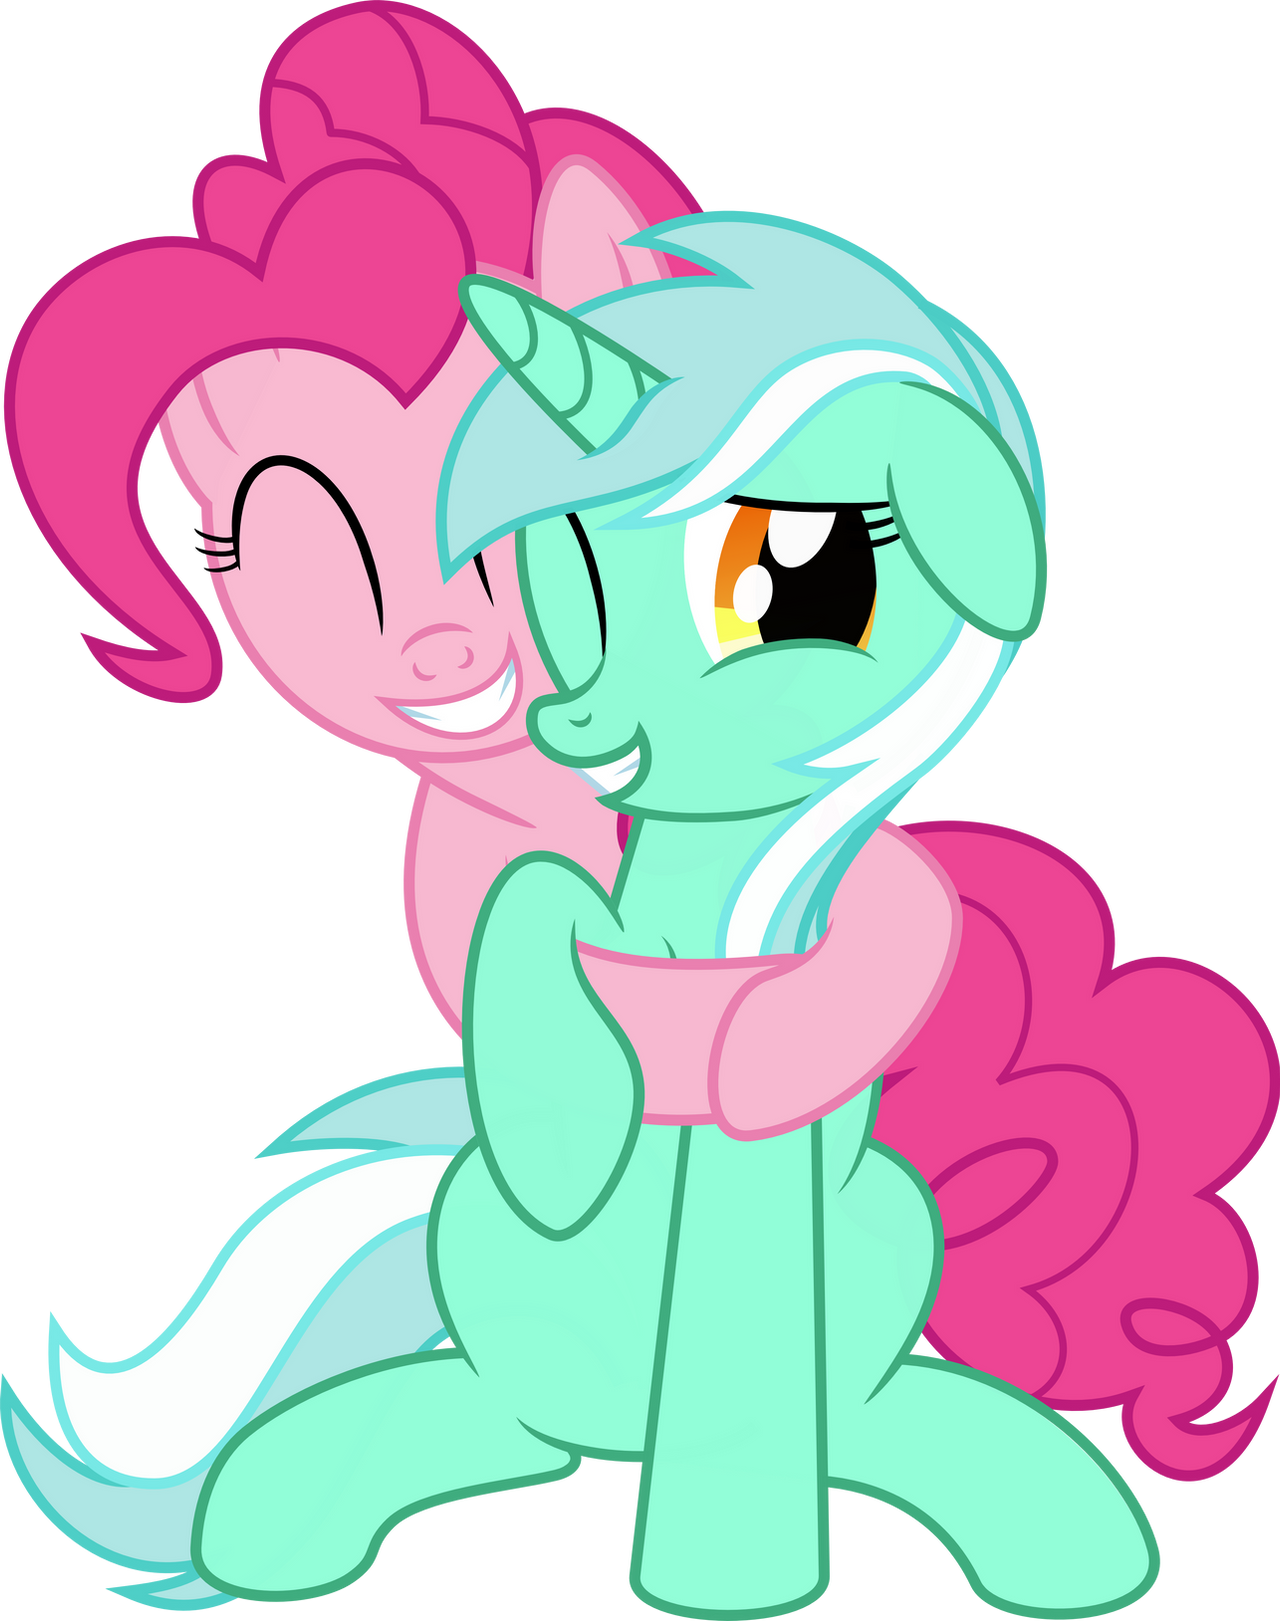 HUGS! Pinkie and Lyra